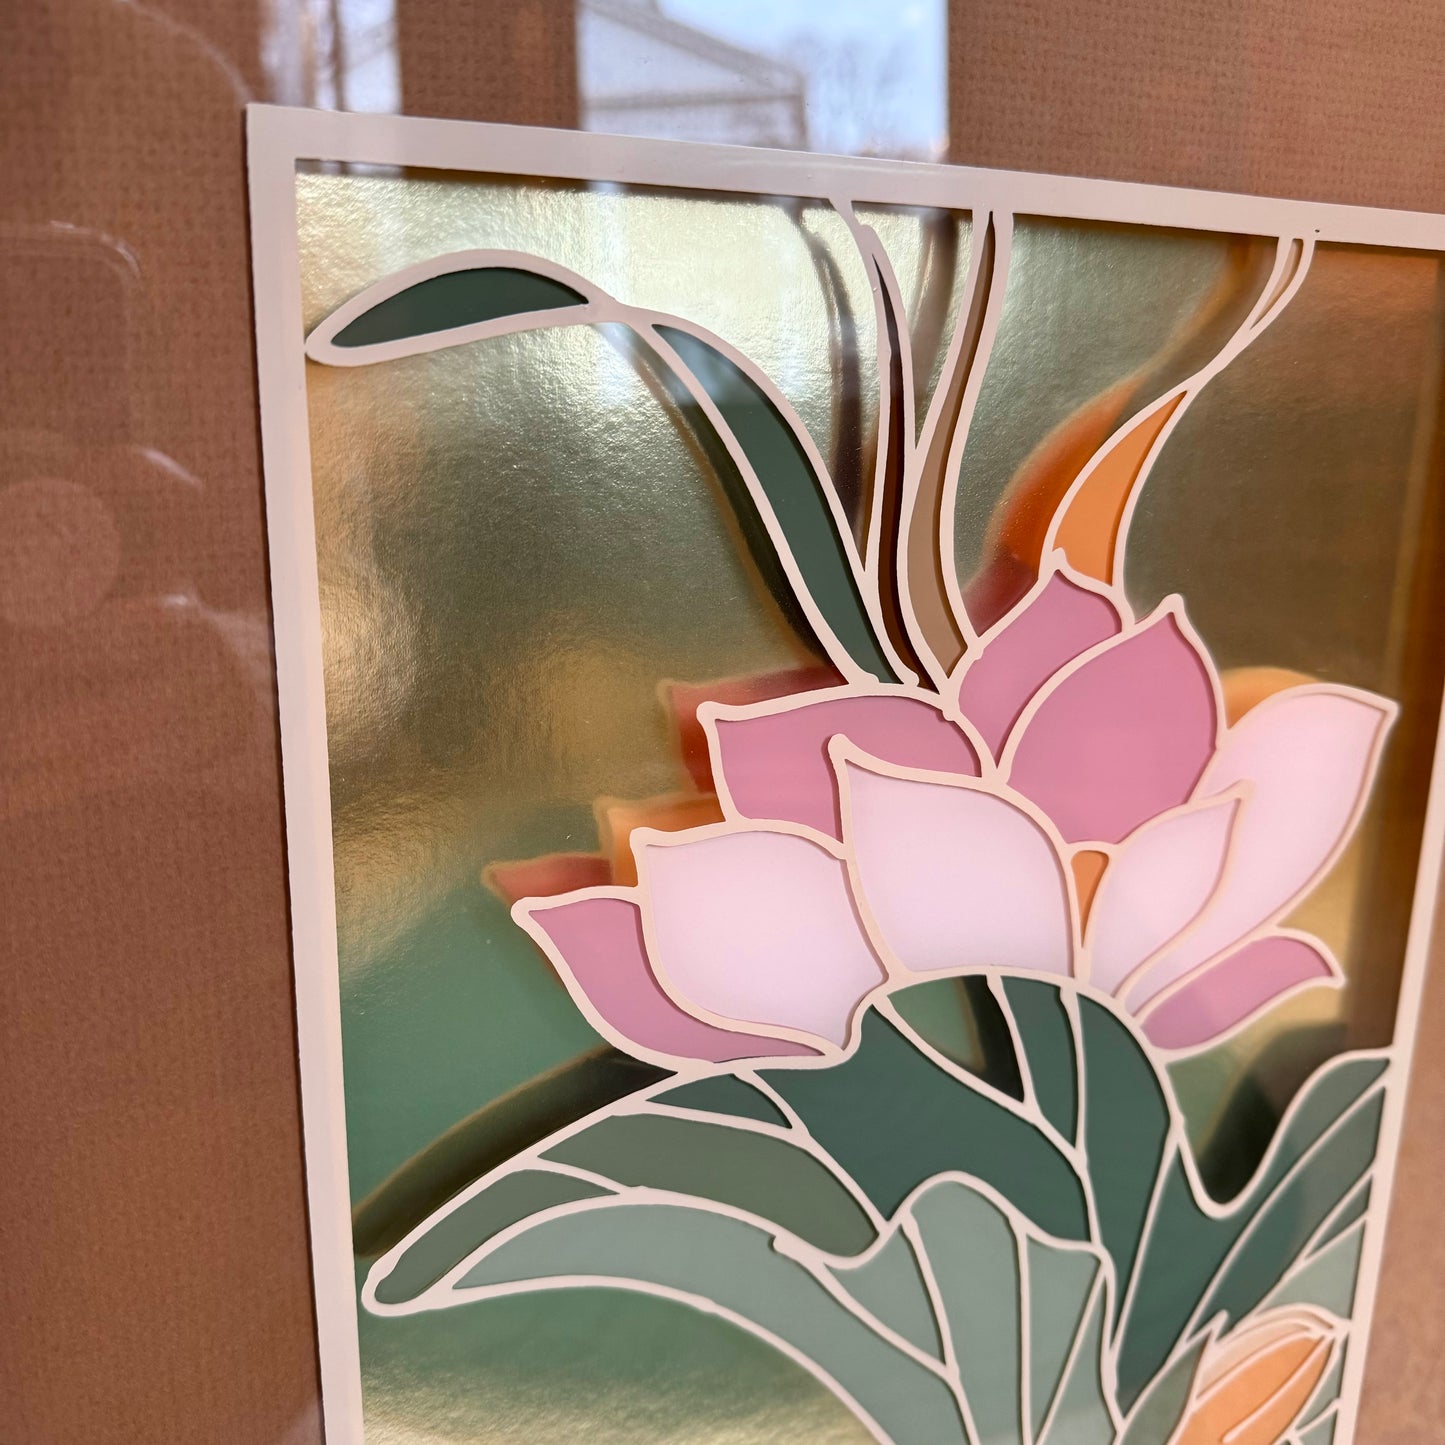 Vintage Framed Botanical Scene Painted on Glass Artwork by Jung Park